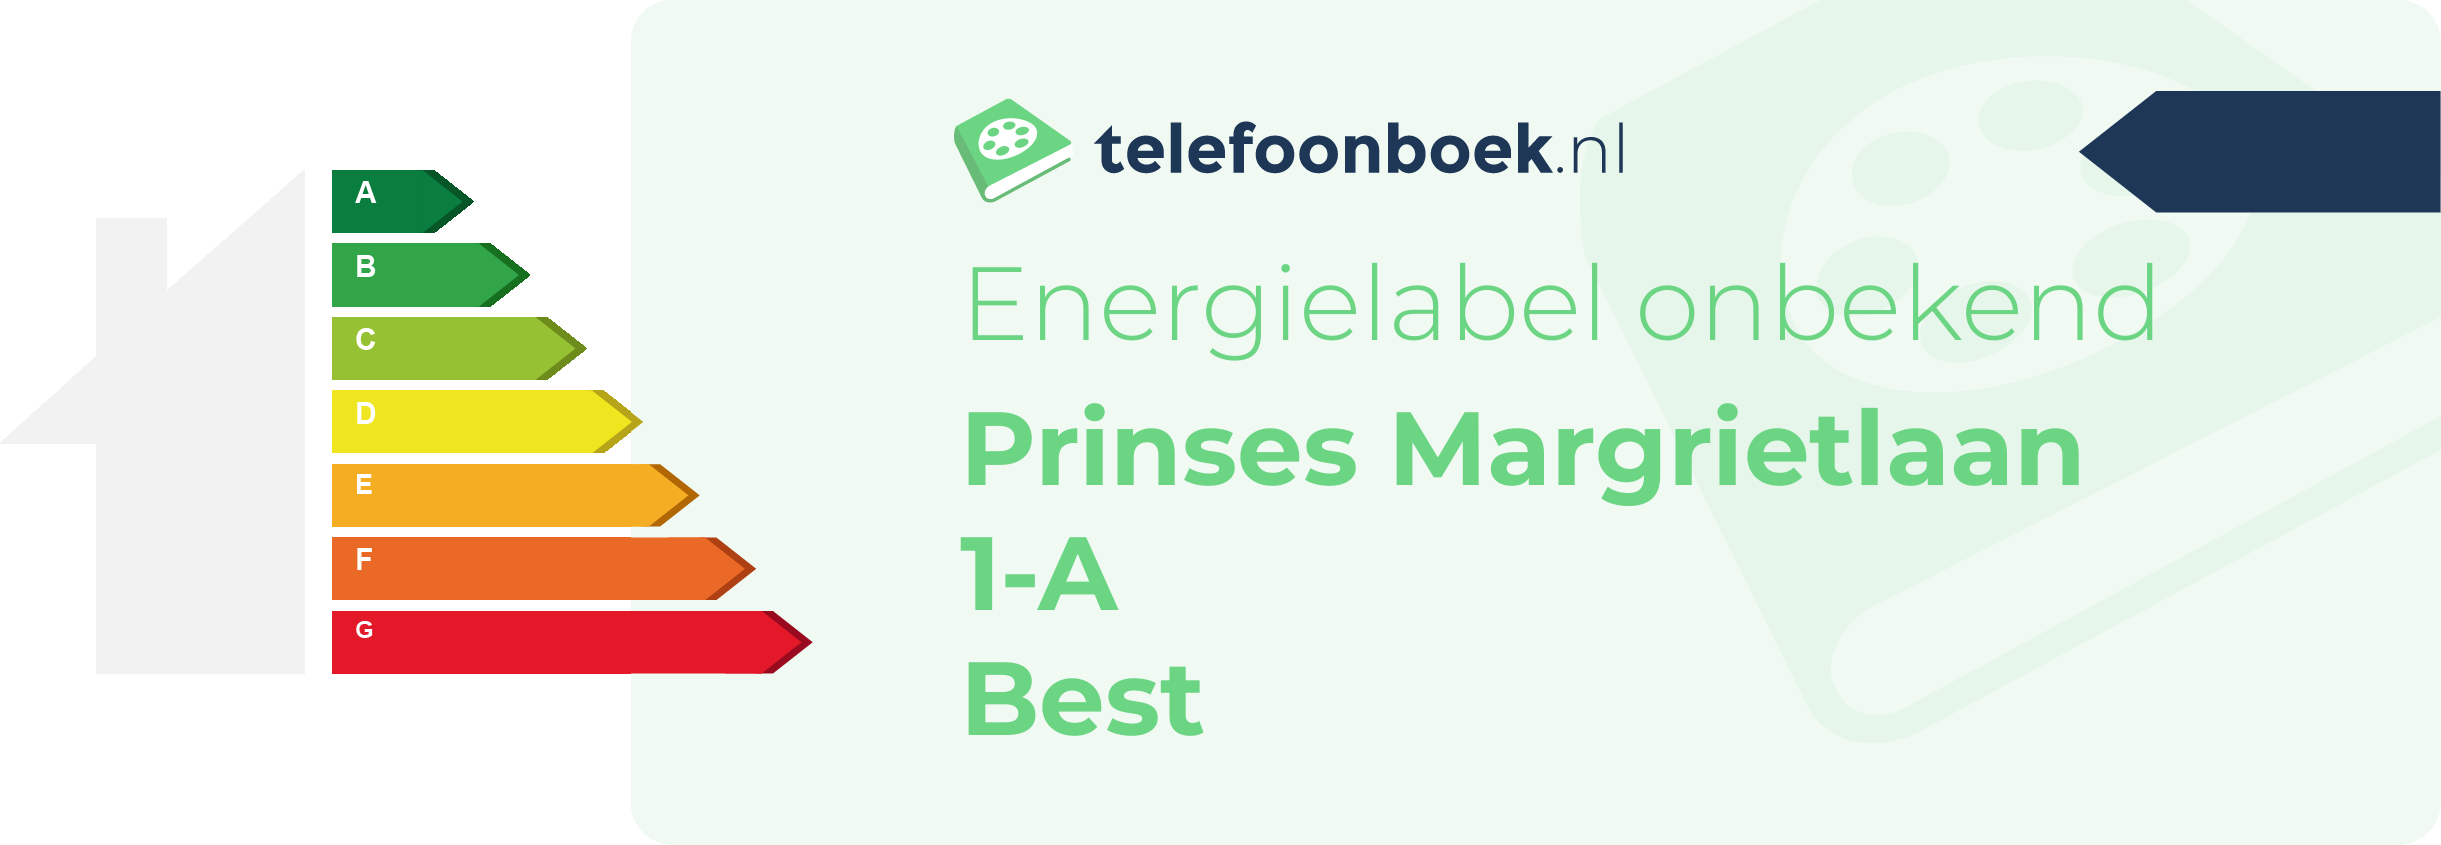 Energielabel Prinses Margrietlaan 1-A Best